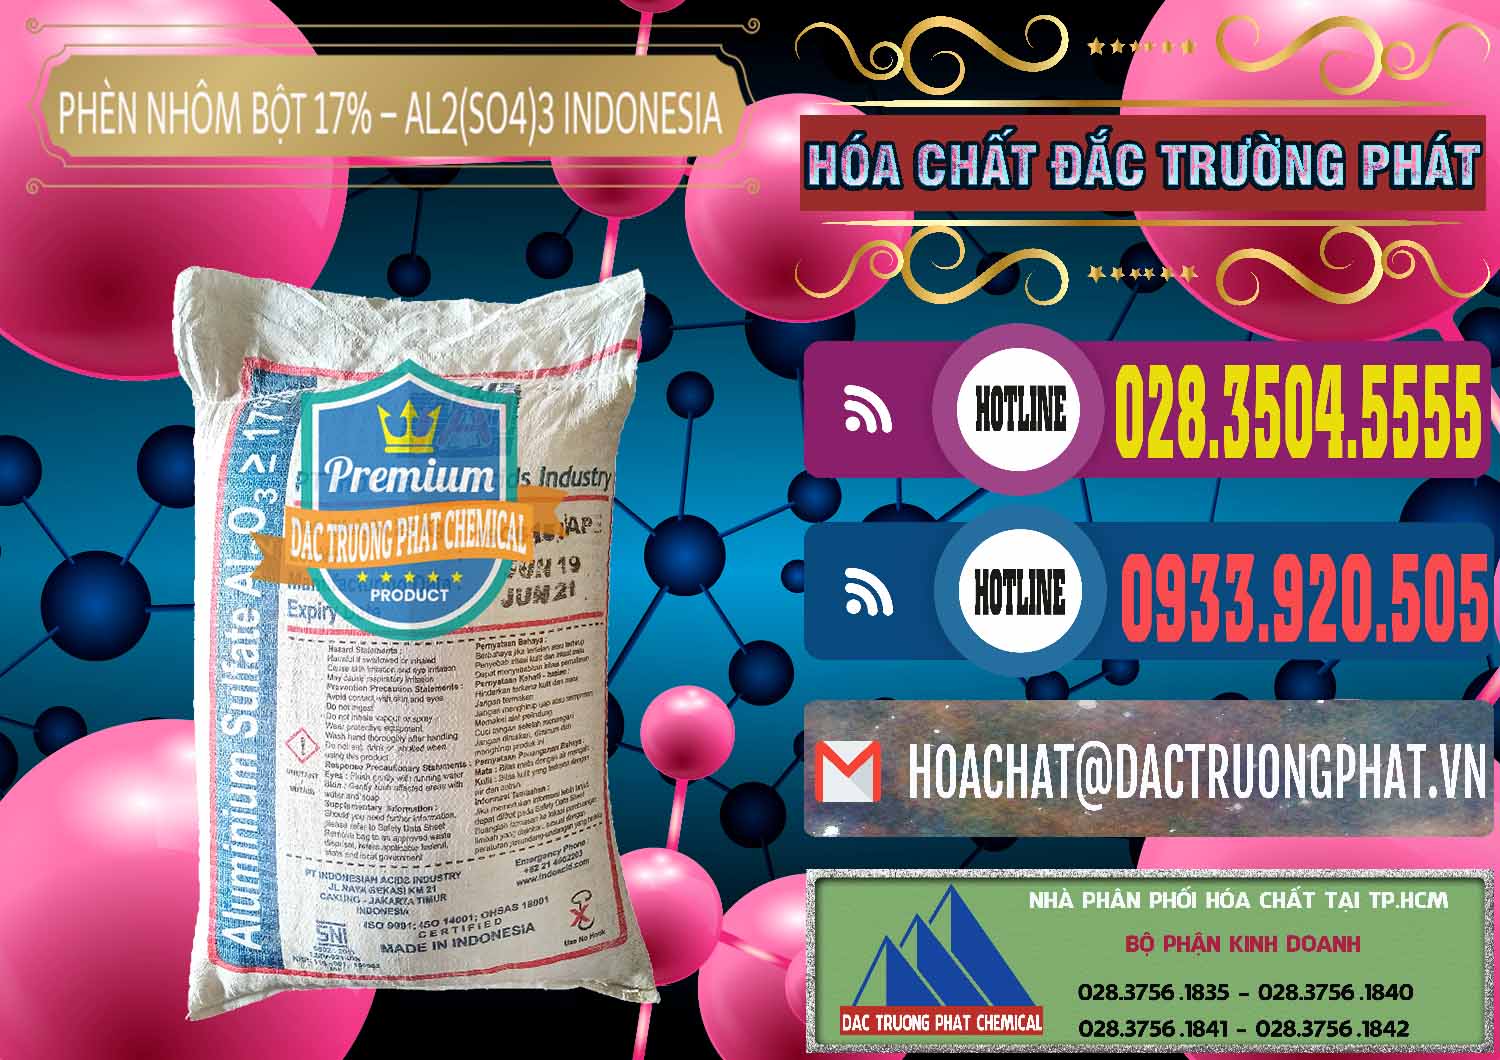 Cty nhập khẩu & bán Phèn Nhôm Bột - Al2(SO4)3 17% bao 25kg Indonesia - 0114 - Cung ứng - phân phối hóa chất tại TP.HCM - muabanhoachat.com.vn